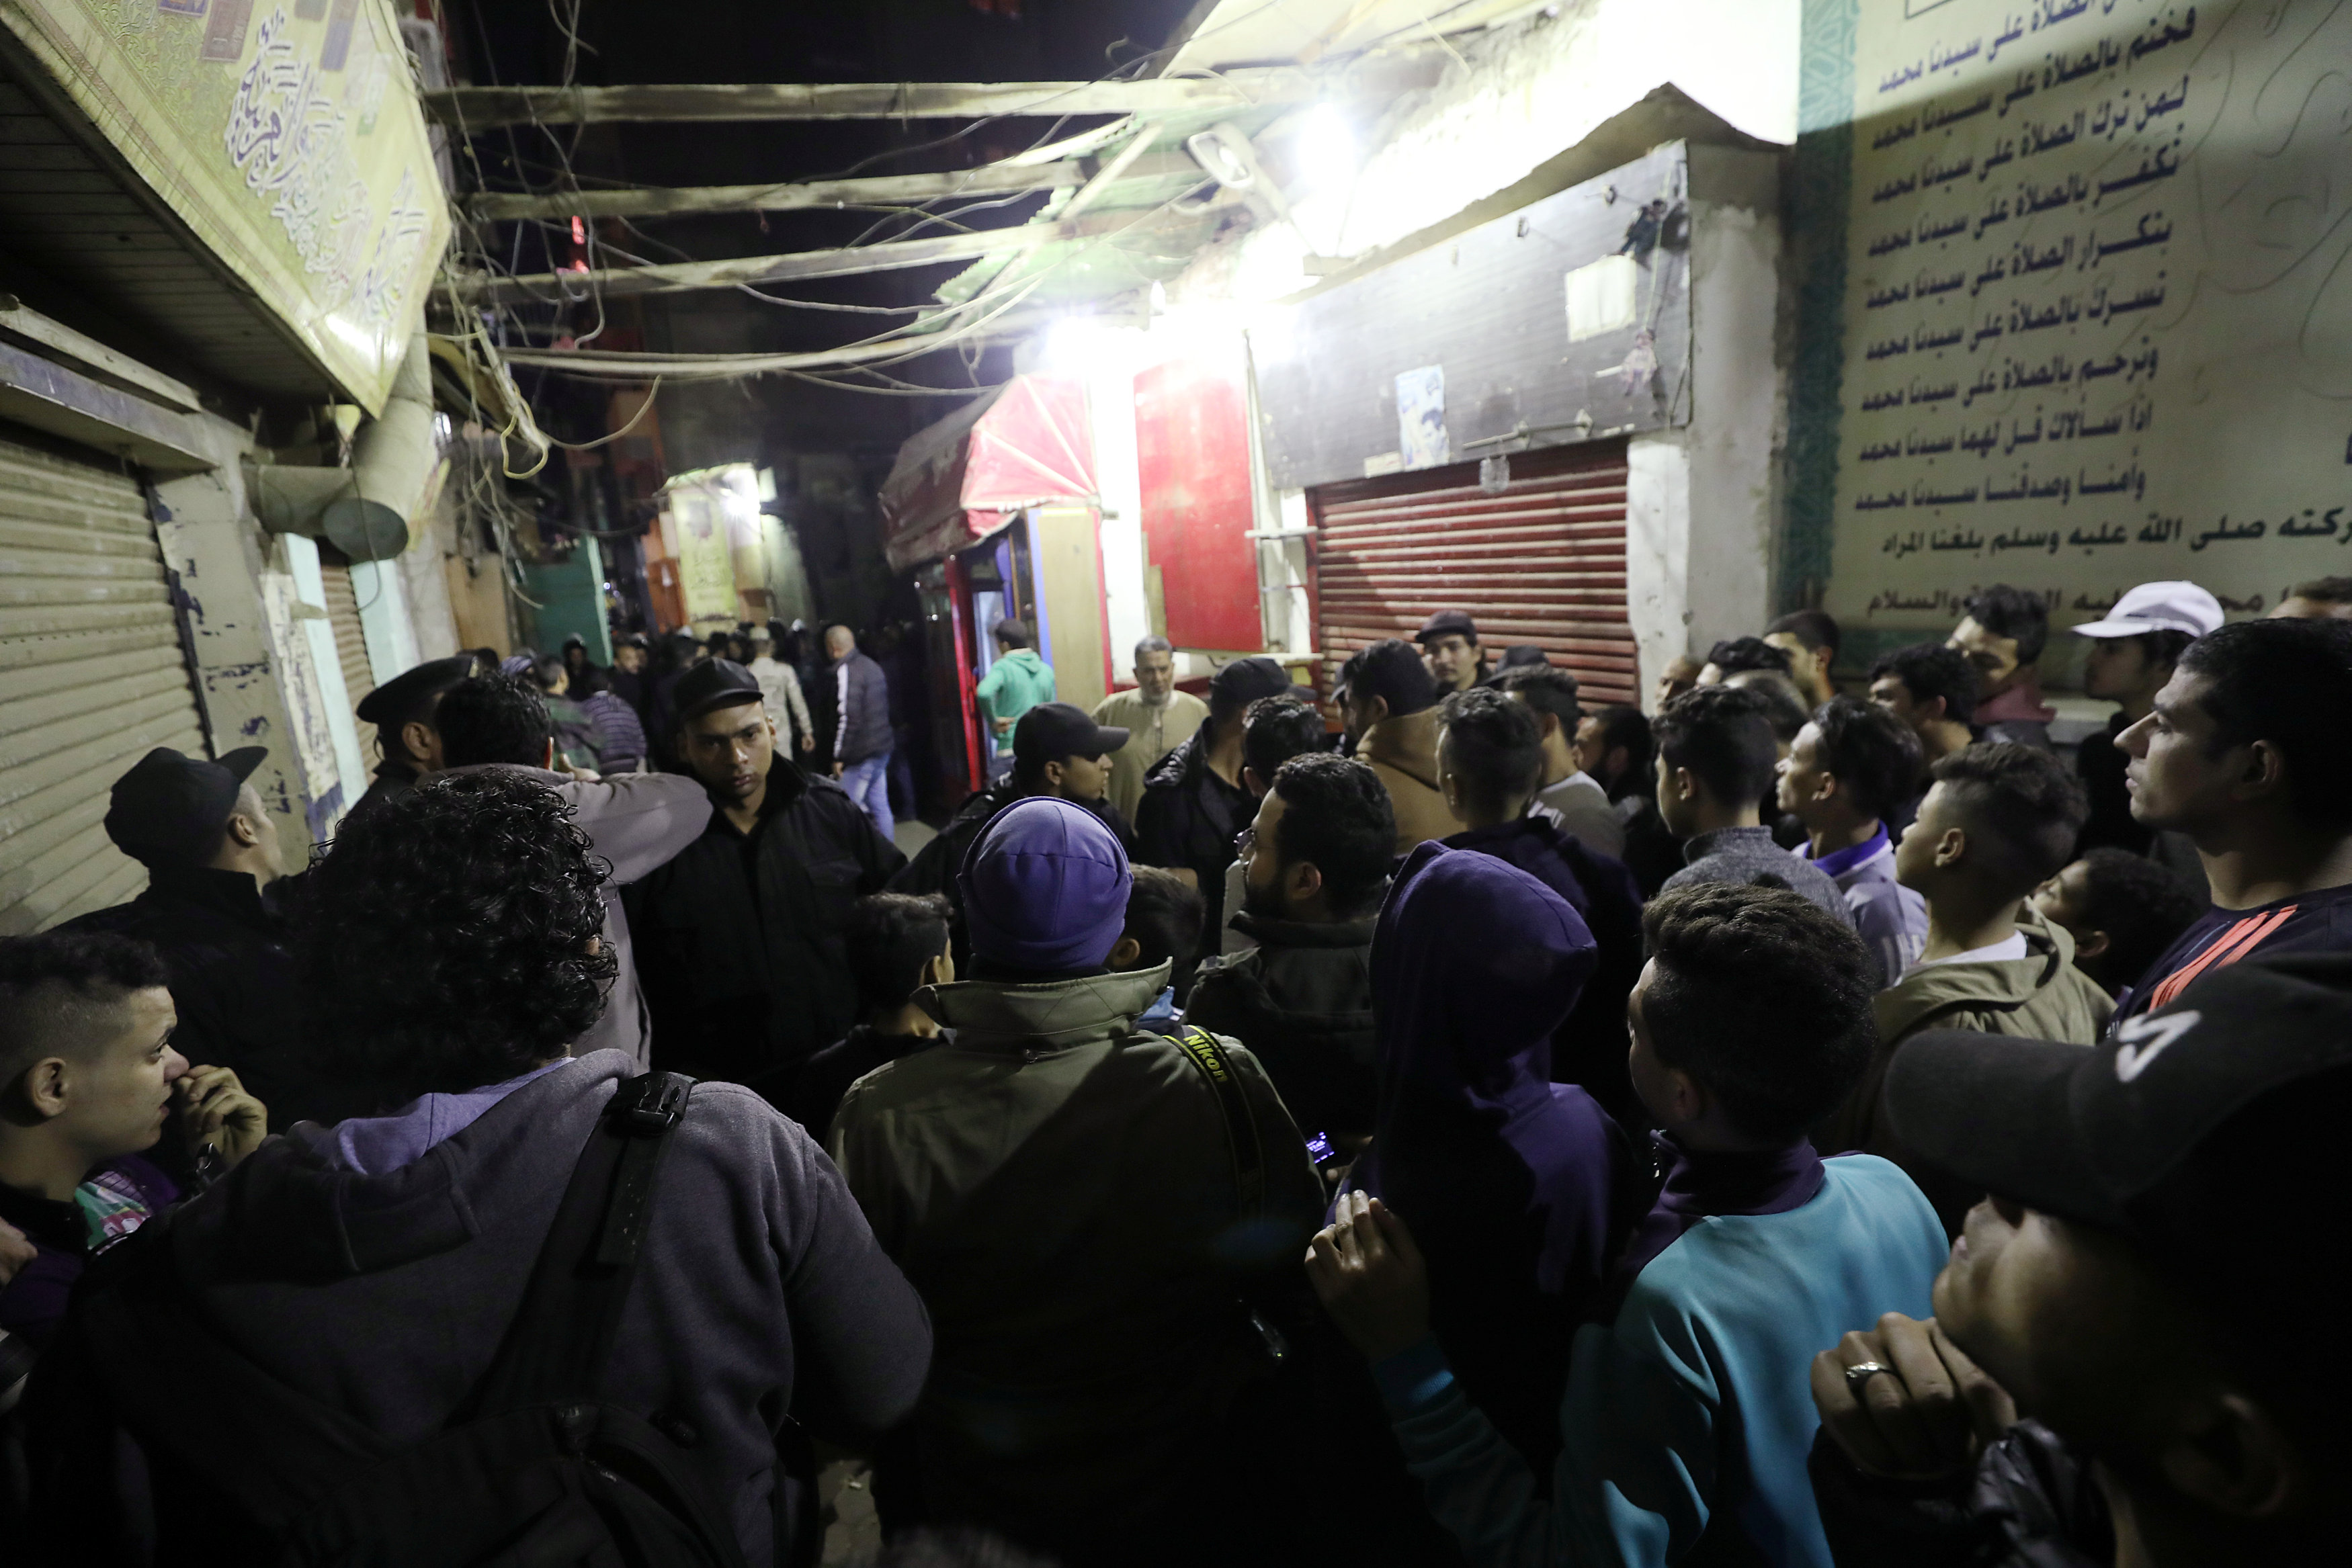 تجمع لرجال شرطة ومدنيين في موقع التفجير، 19 فبراير 2019. محمد عبدالغني/ رويترز 